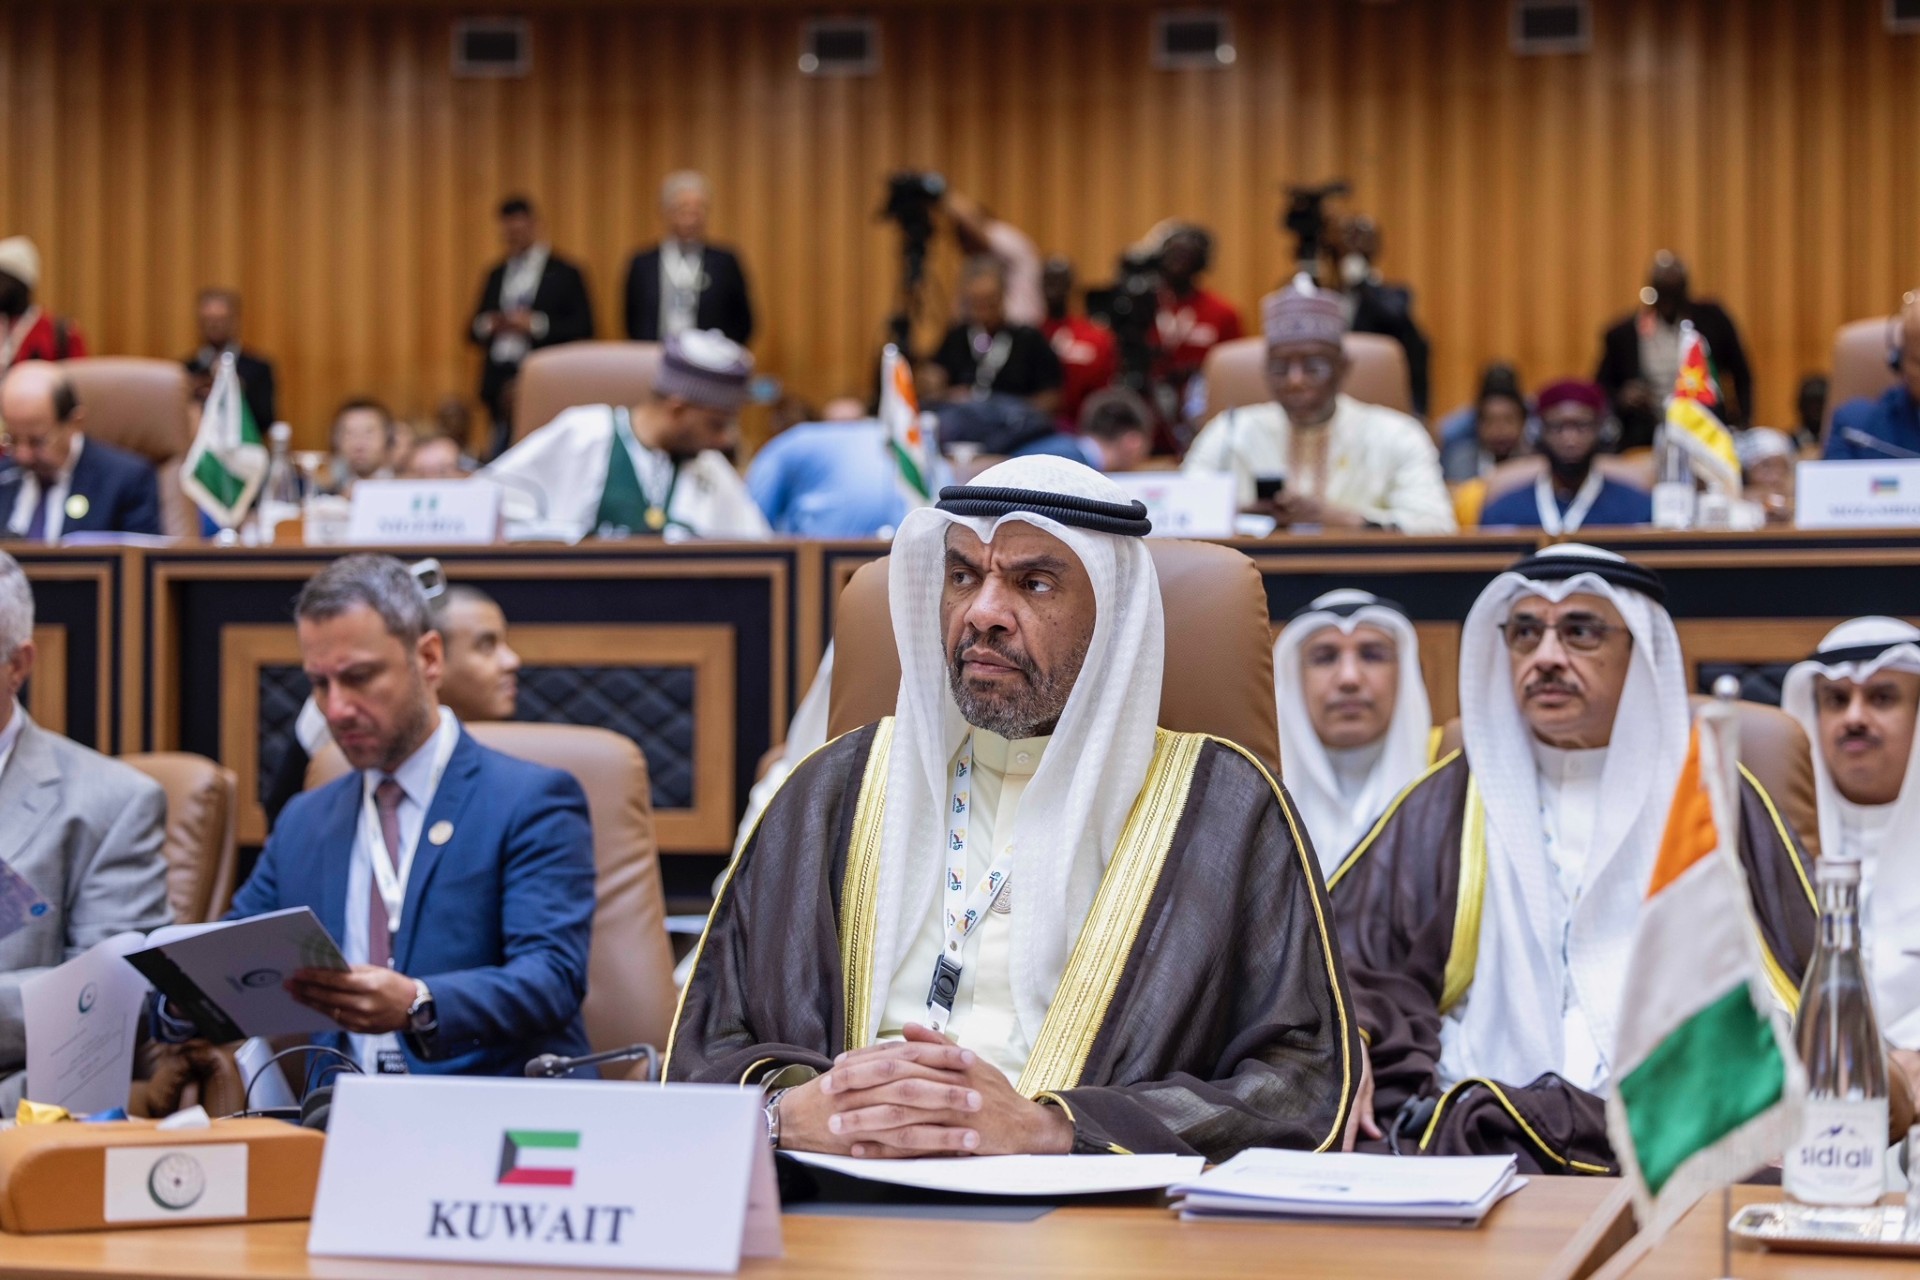 ممثل سمو أمير البلاد وزير الخارجية يترأس وفد دولة الكويت في الدورة الـ15 لمؤتمر القمة الإسلامية بغامبيا